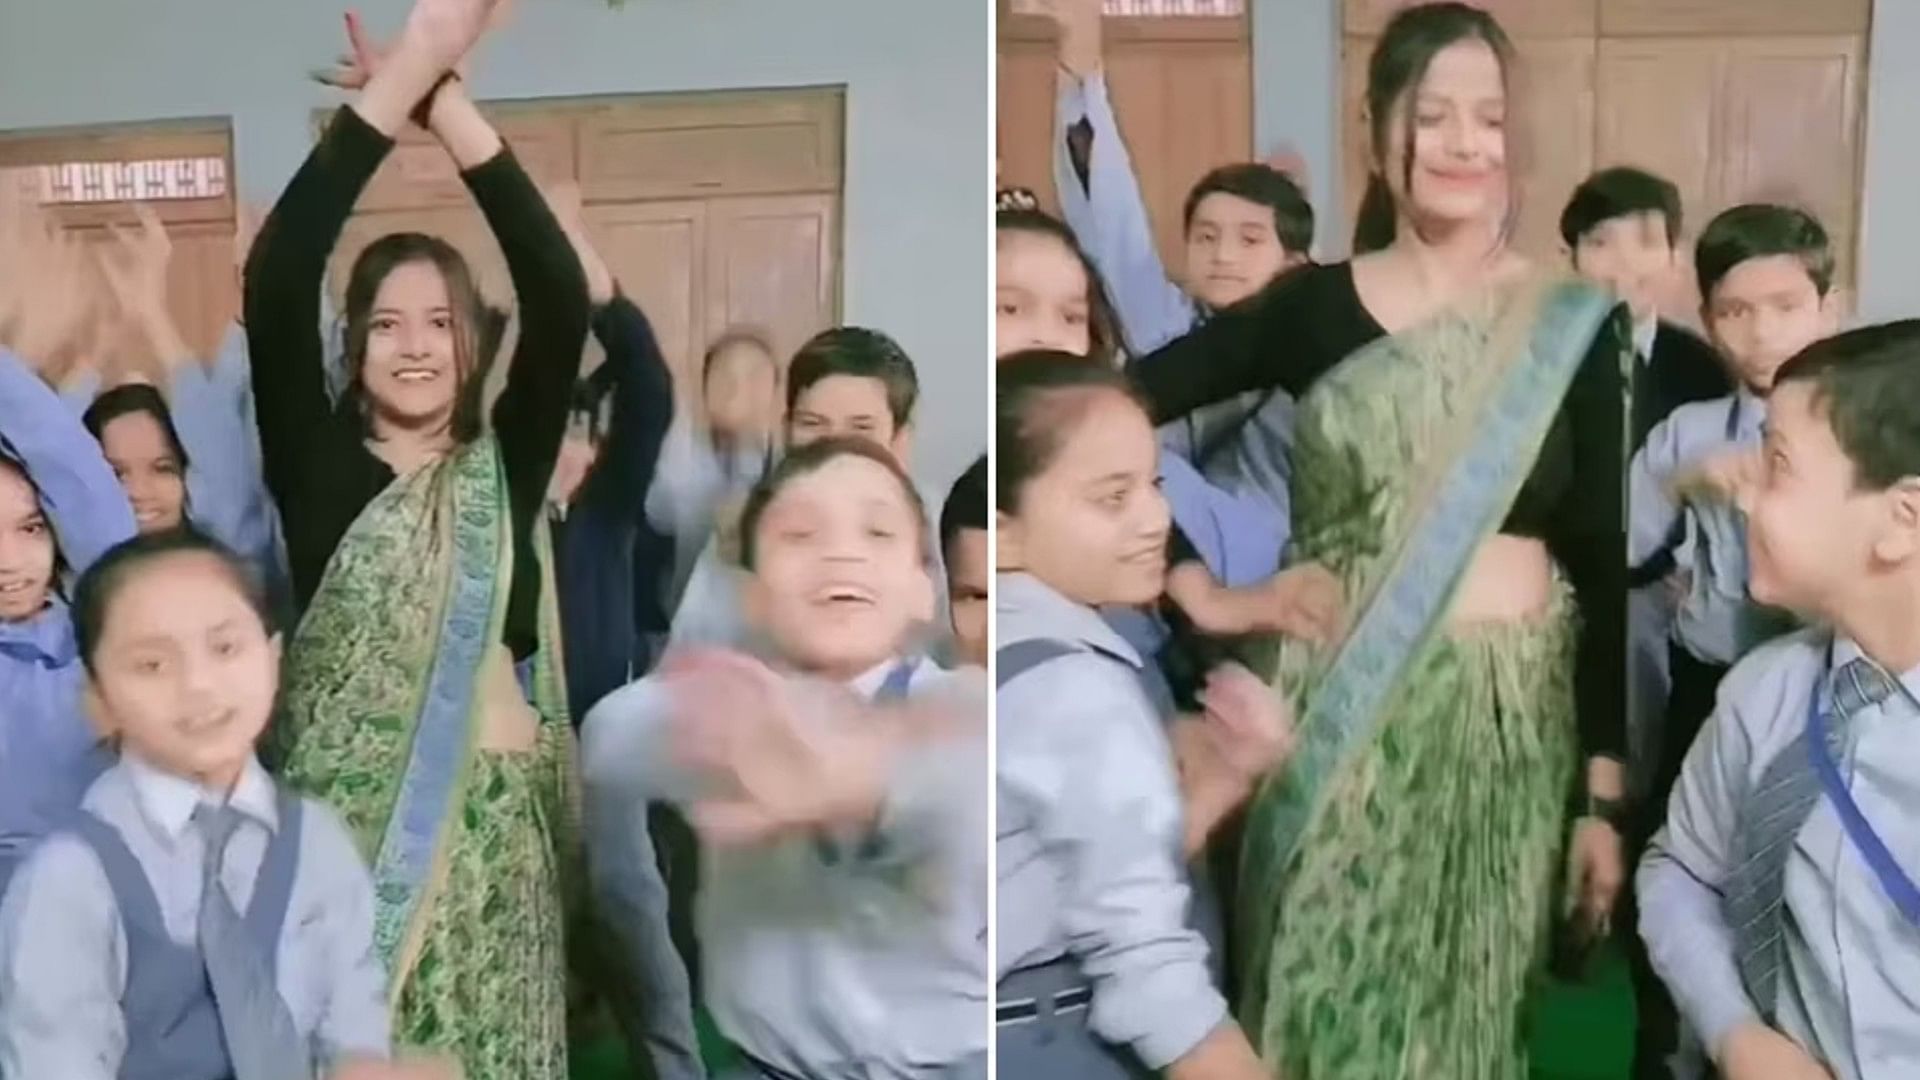 student and teacher danced on ho jayegi balle balle song video viral